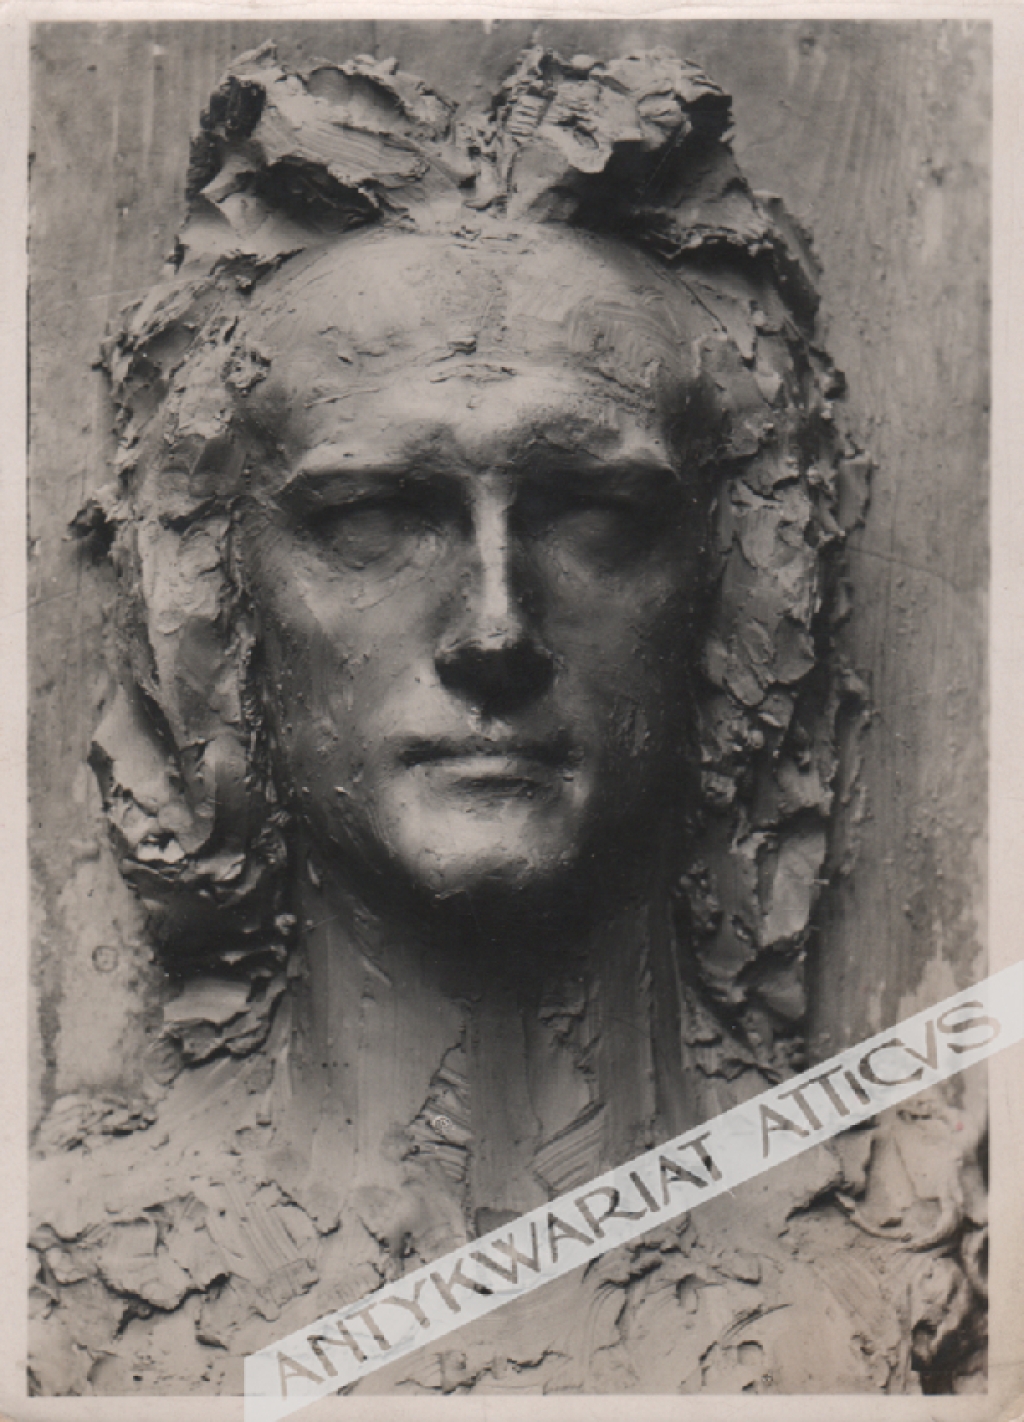 [fotografia, 1938] Studium głowy do posągu Zmartwychwstania. Rzeźbił Konstanty Laszczka